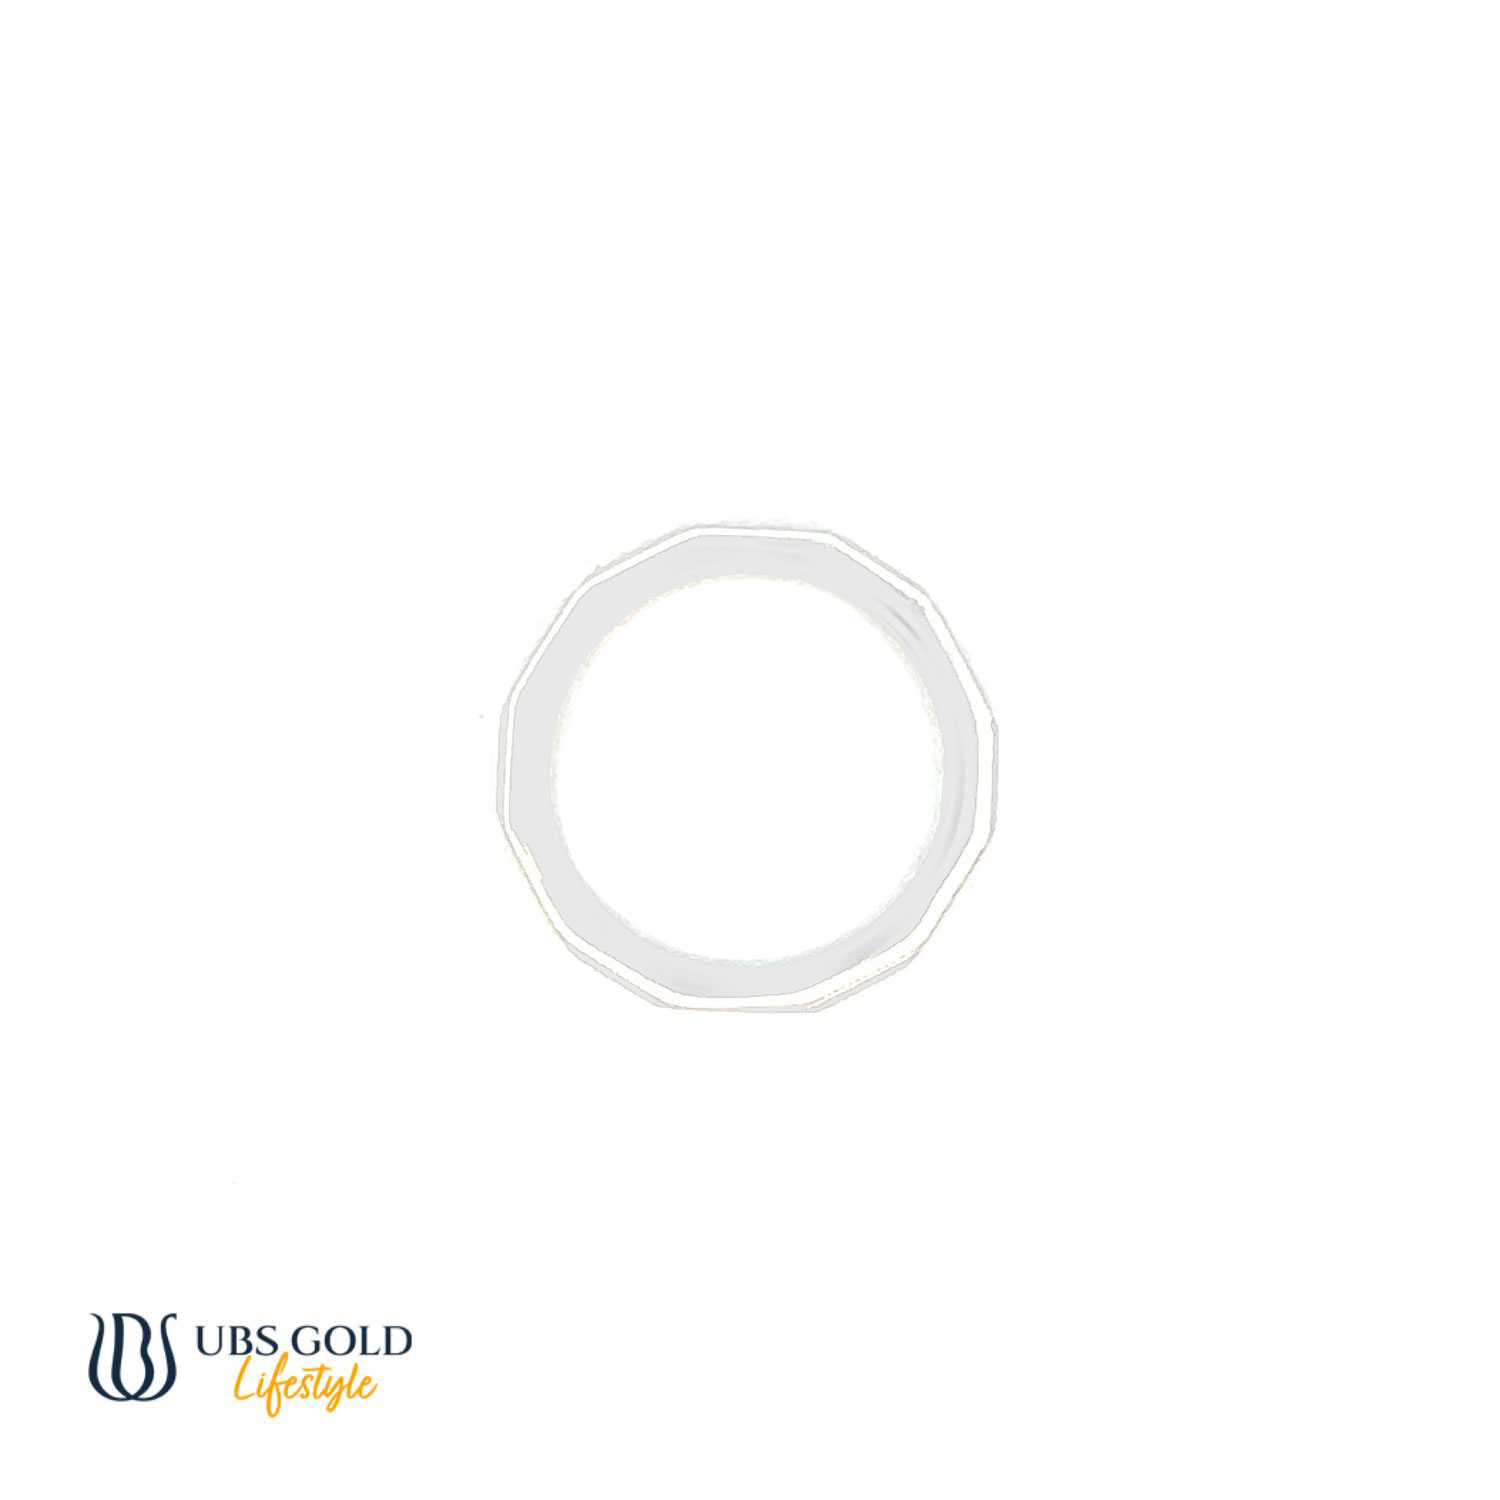 UBS Gold Cincin Emas - Cc16856 - 17K